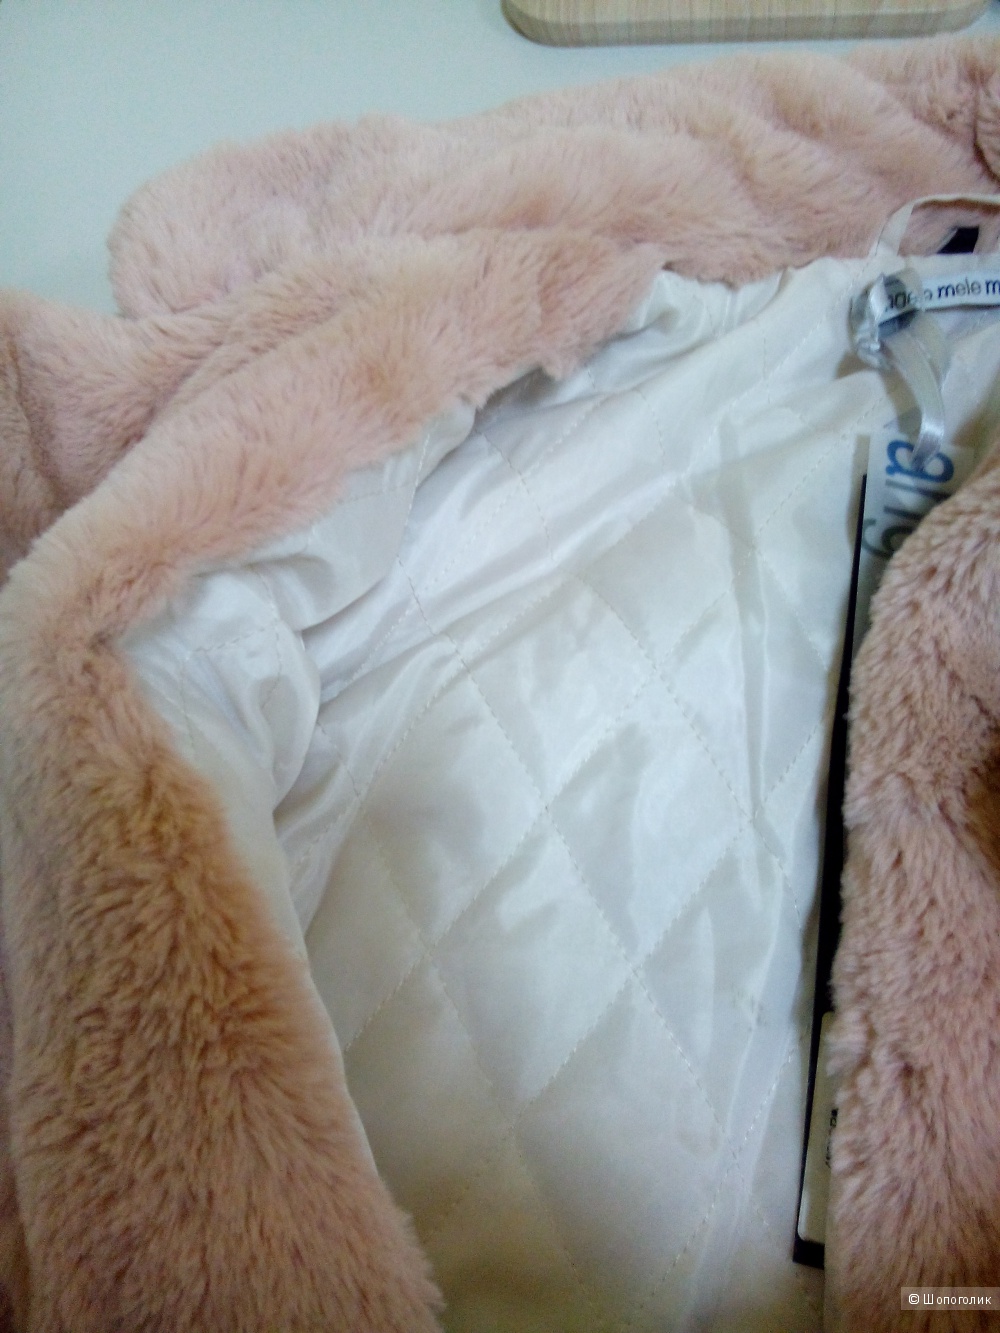 Пальто-шубка Angela Mele Milano размер M.